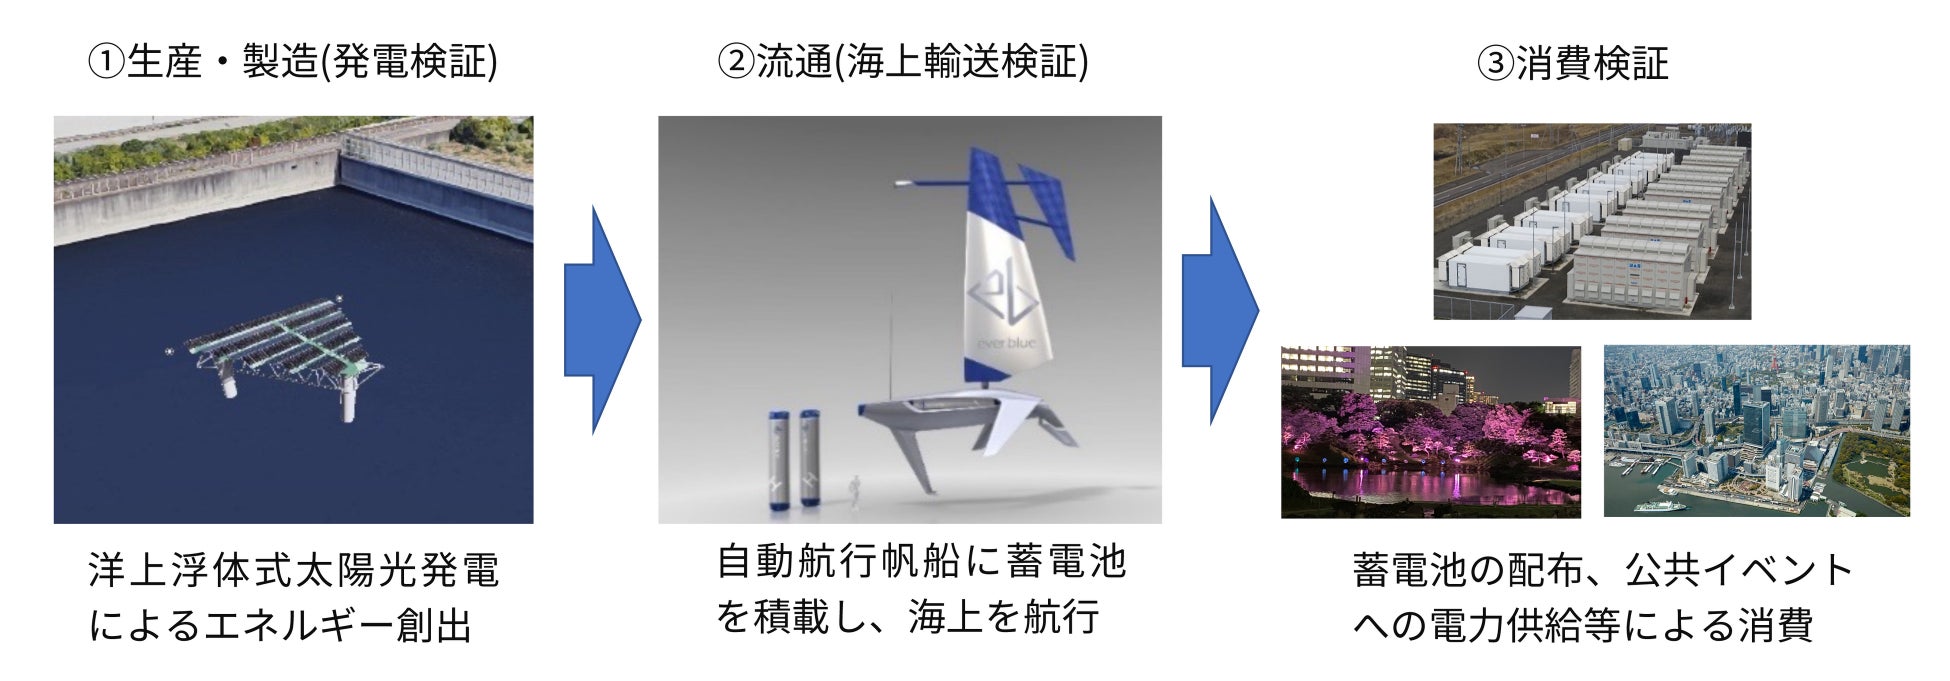 東京ベイエリアにおける最先端技術の社会実装を目指す「東京ベイｅＳＧプロジェクト 先行プロジェクト」において、国内初の洋上浮体式太陽光発電、自動航行帆船の技術実証提案が採択のサブ画像1